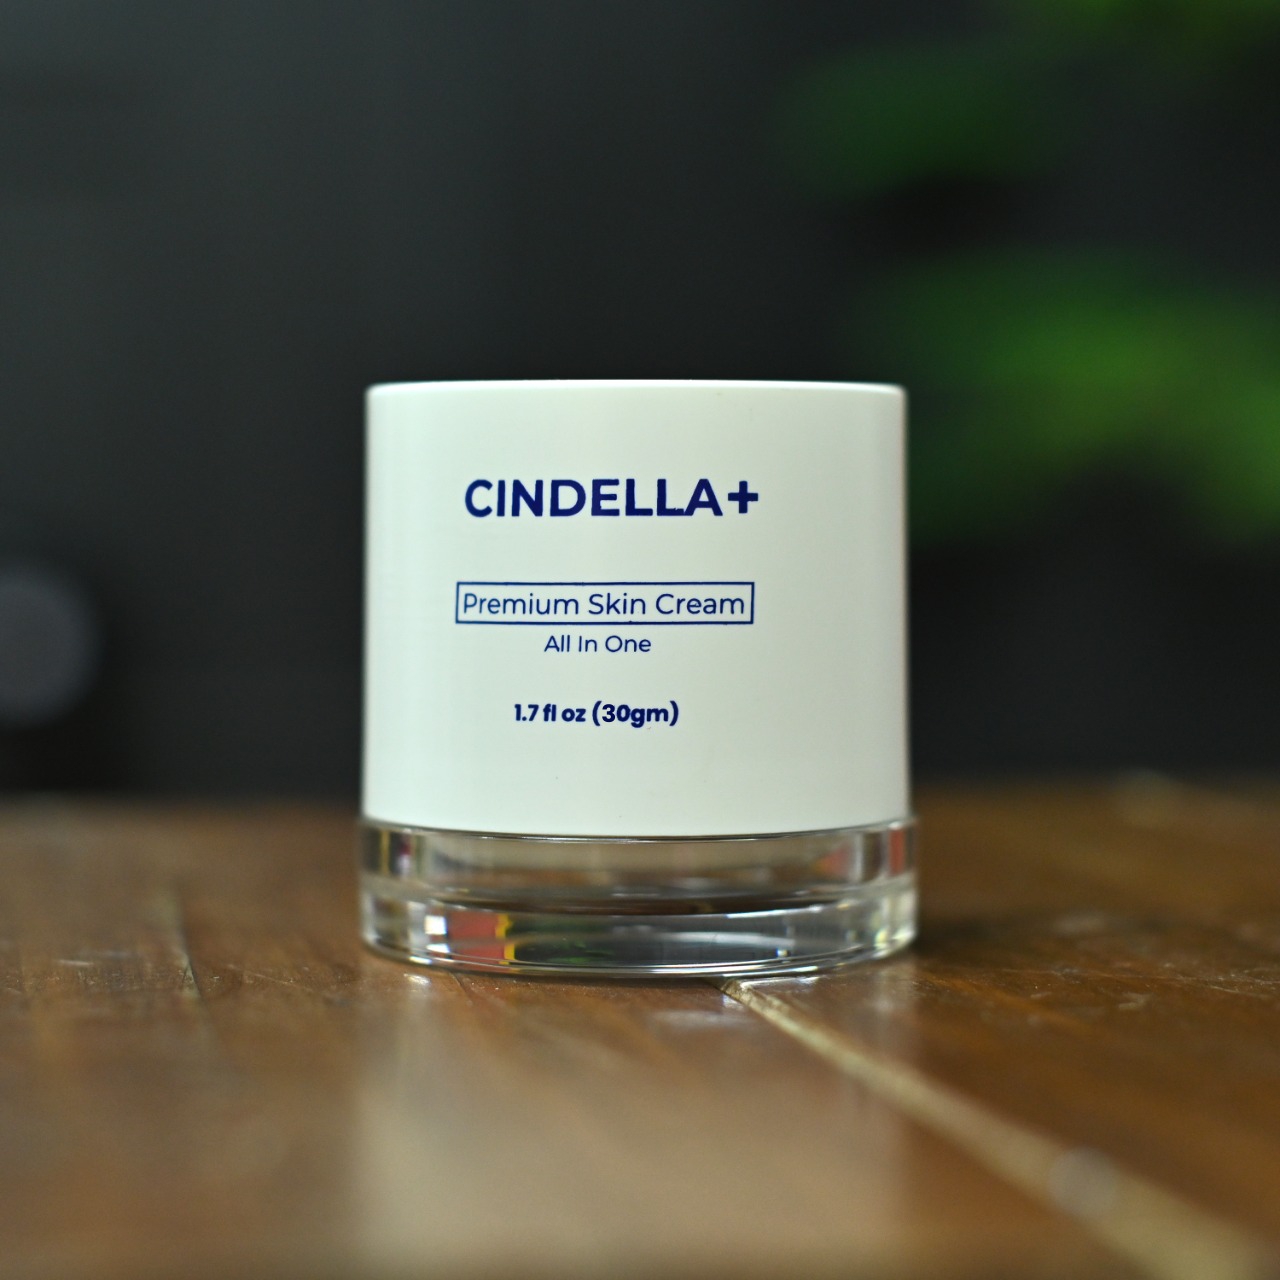 Cindella Plus Premium Skin Cream